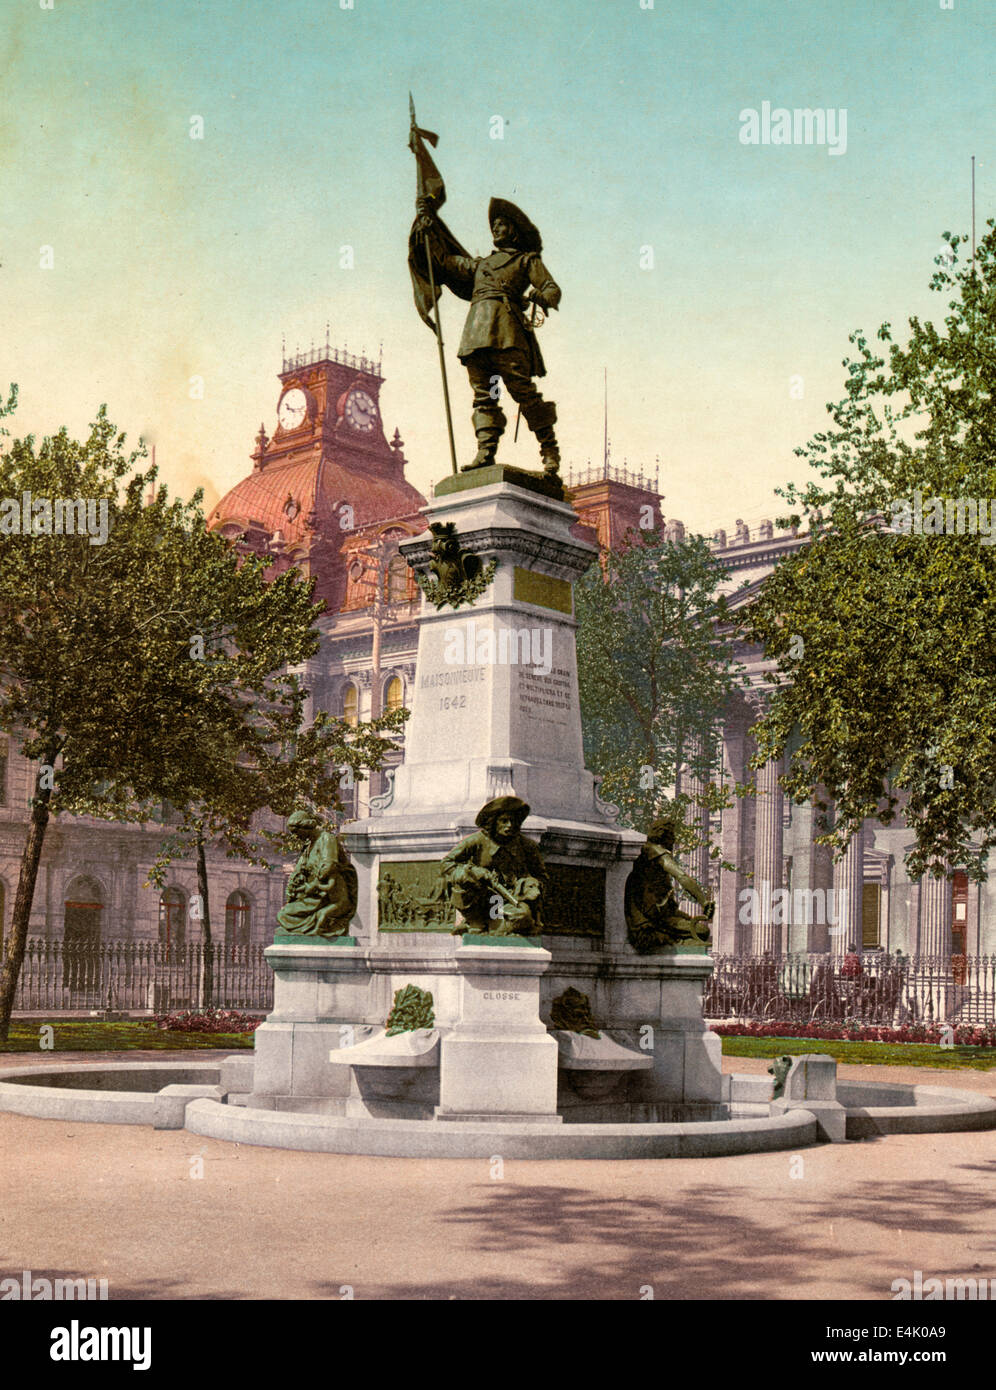 Statue von Maisonneuve, Montreal - Statue von Paul de Chomedey de Maisonneuve (1612-1676), ein französischer Offizier und Gründer von Montreal, befindet sich am Place d ' Armes Square, Montreal, ca. 1901 Stockfoto